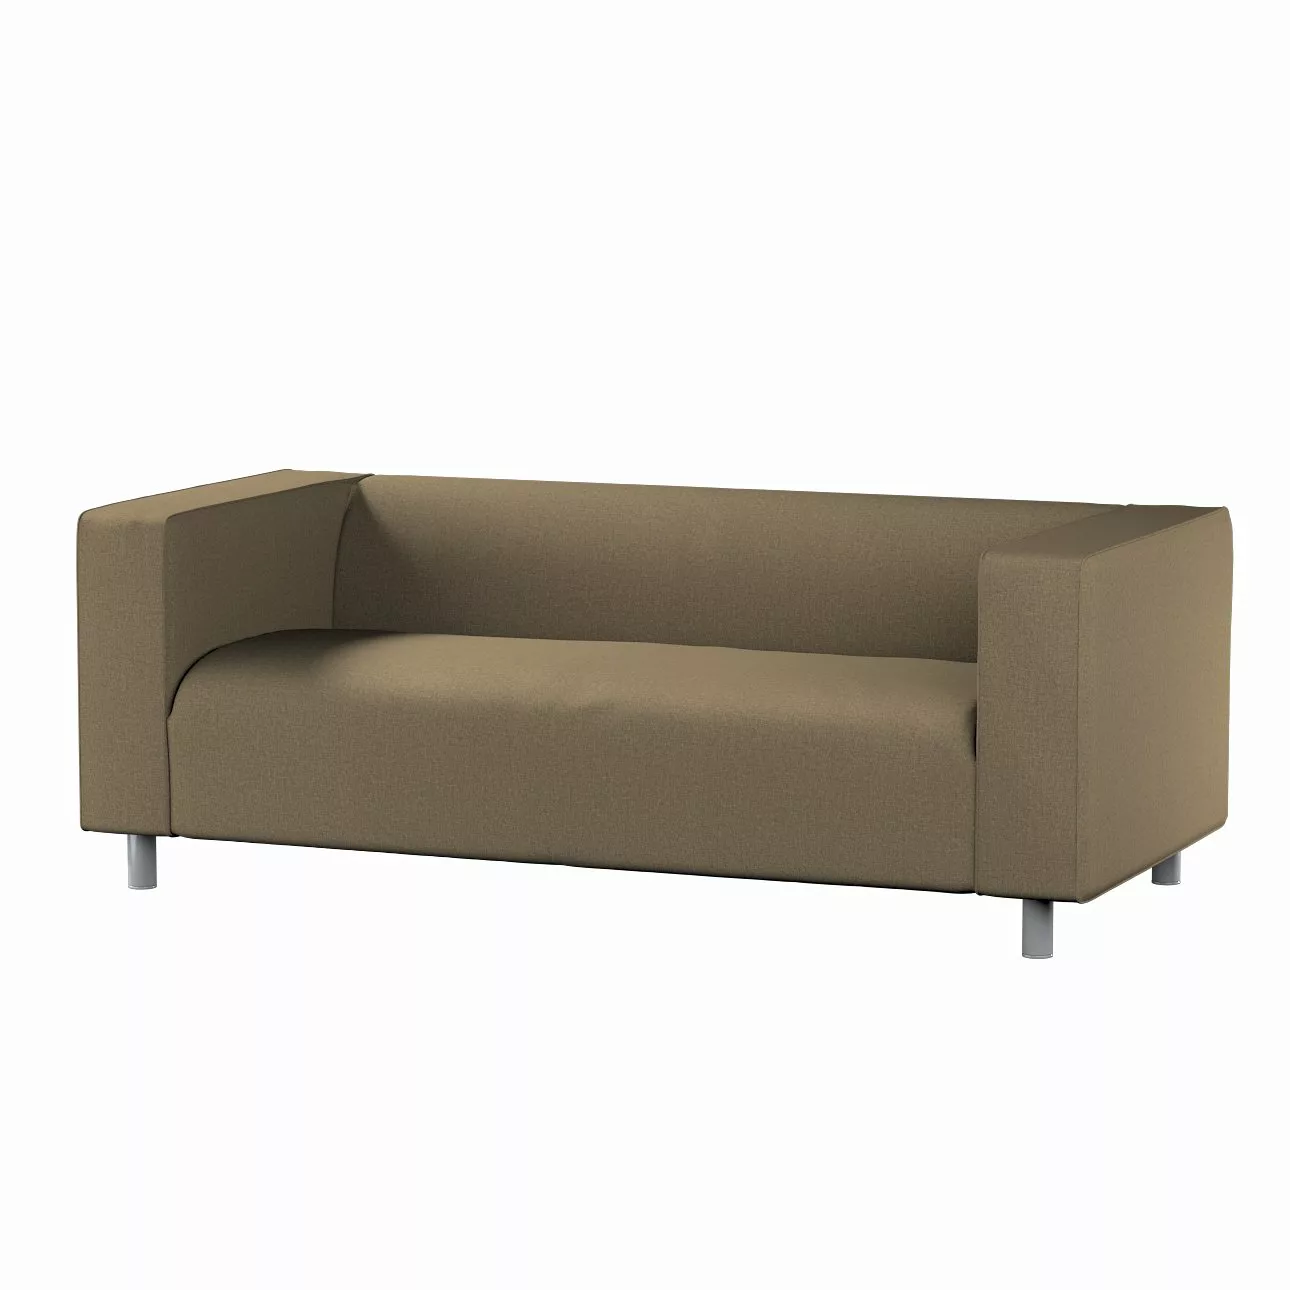 Bezug für Klippan 2-Sitzer Sofa, grau-braun, Sofahusse, Klippan 2-Sitzer, L günstig online kaufen